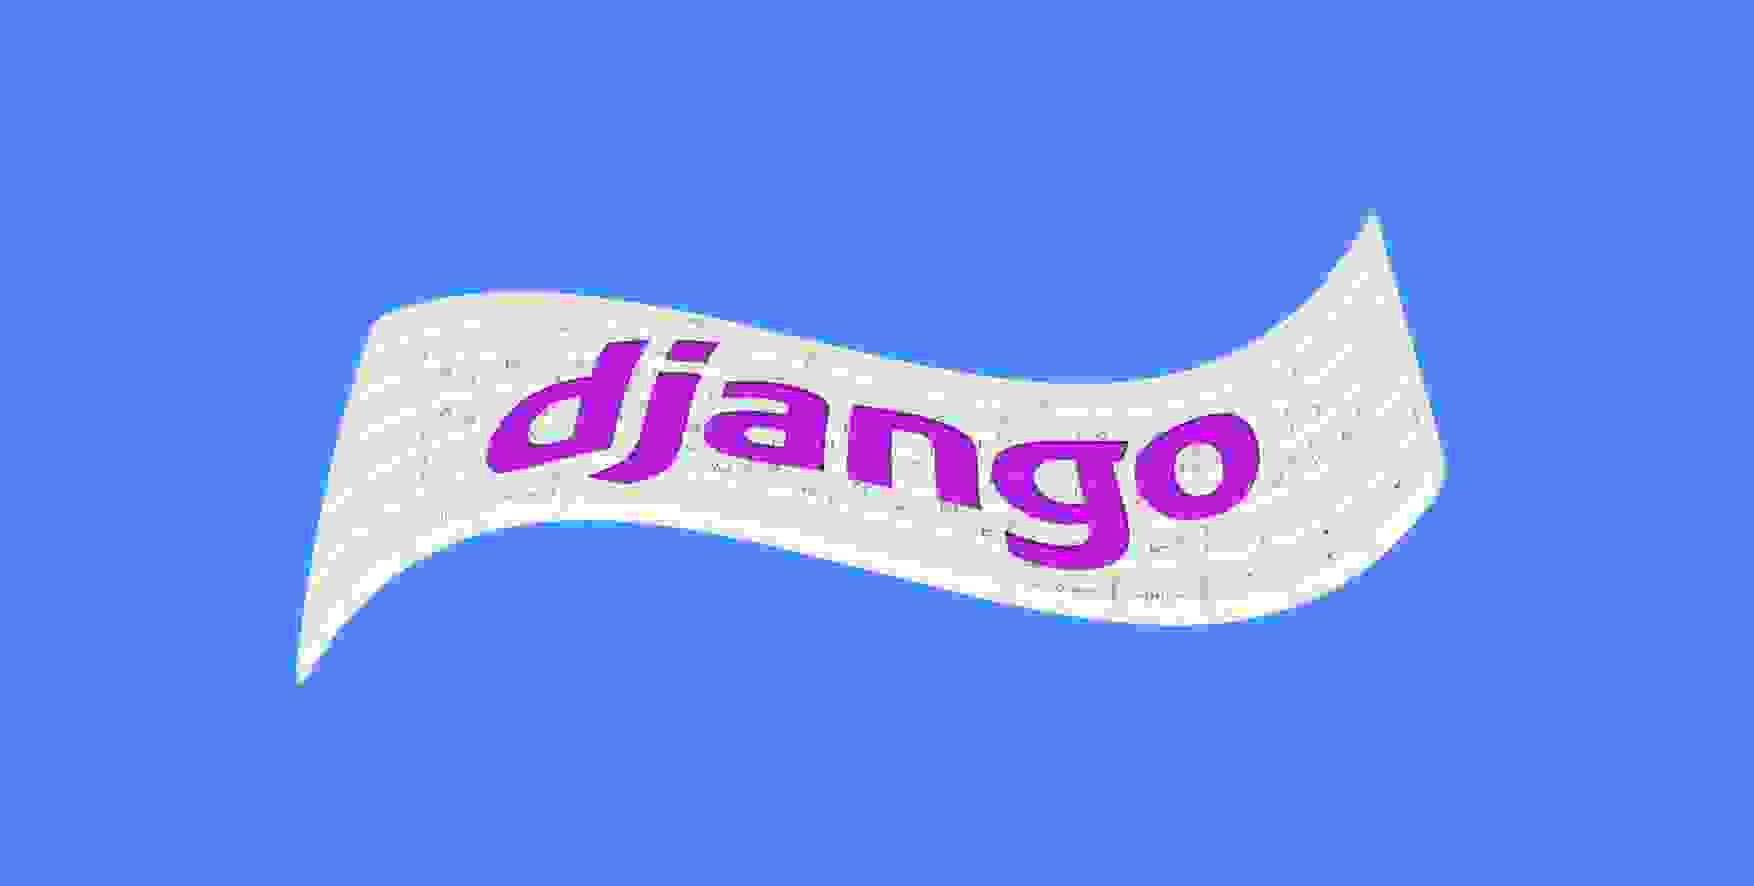 Django written on a keyboard